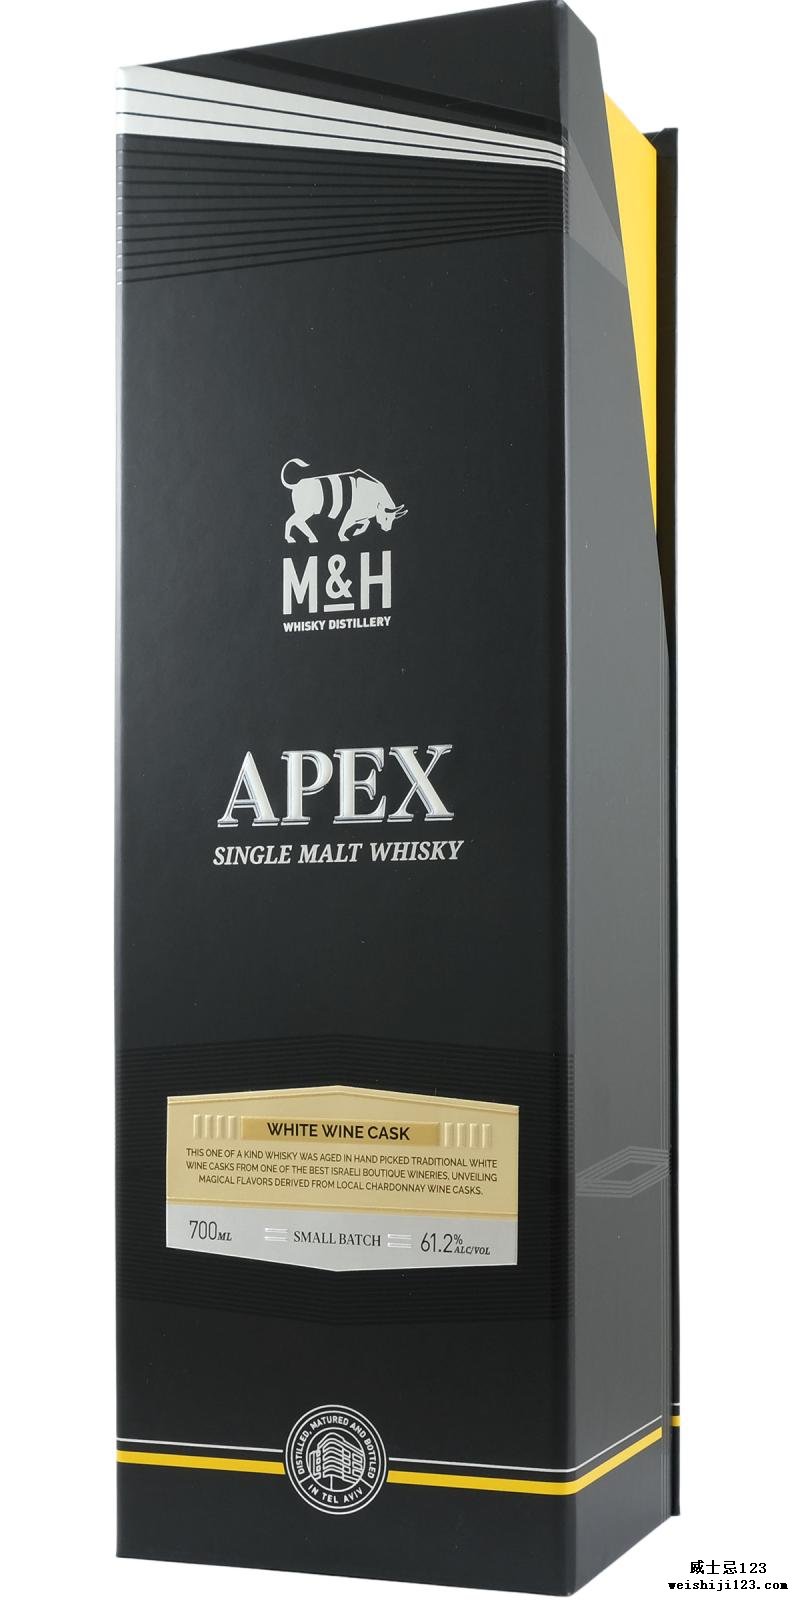 M&H 2017 - APEX